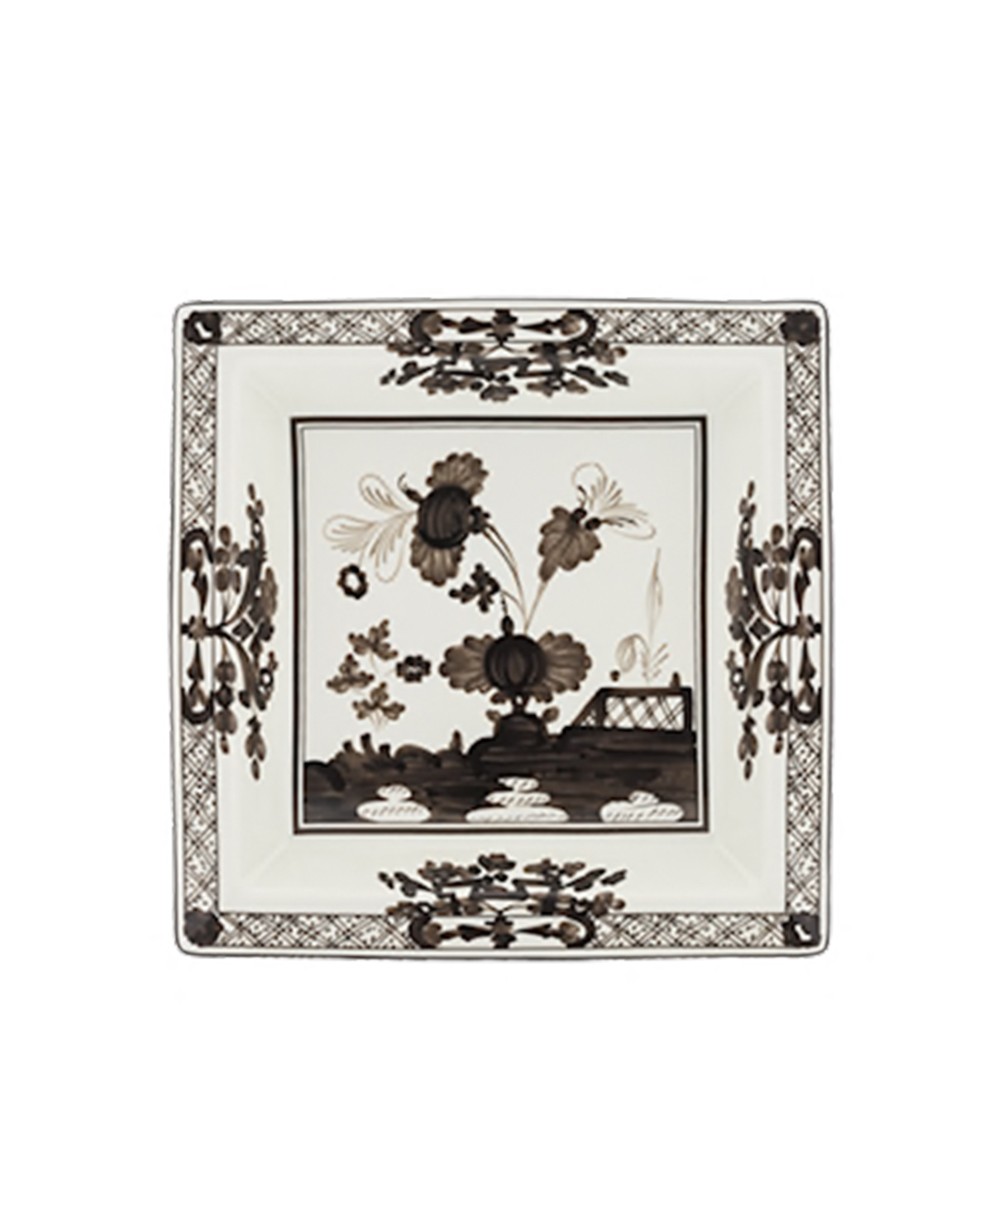 Produktbild der "Oriente Albus Platte" von Ginori 1735 im RAUM Concept store